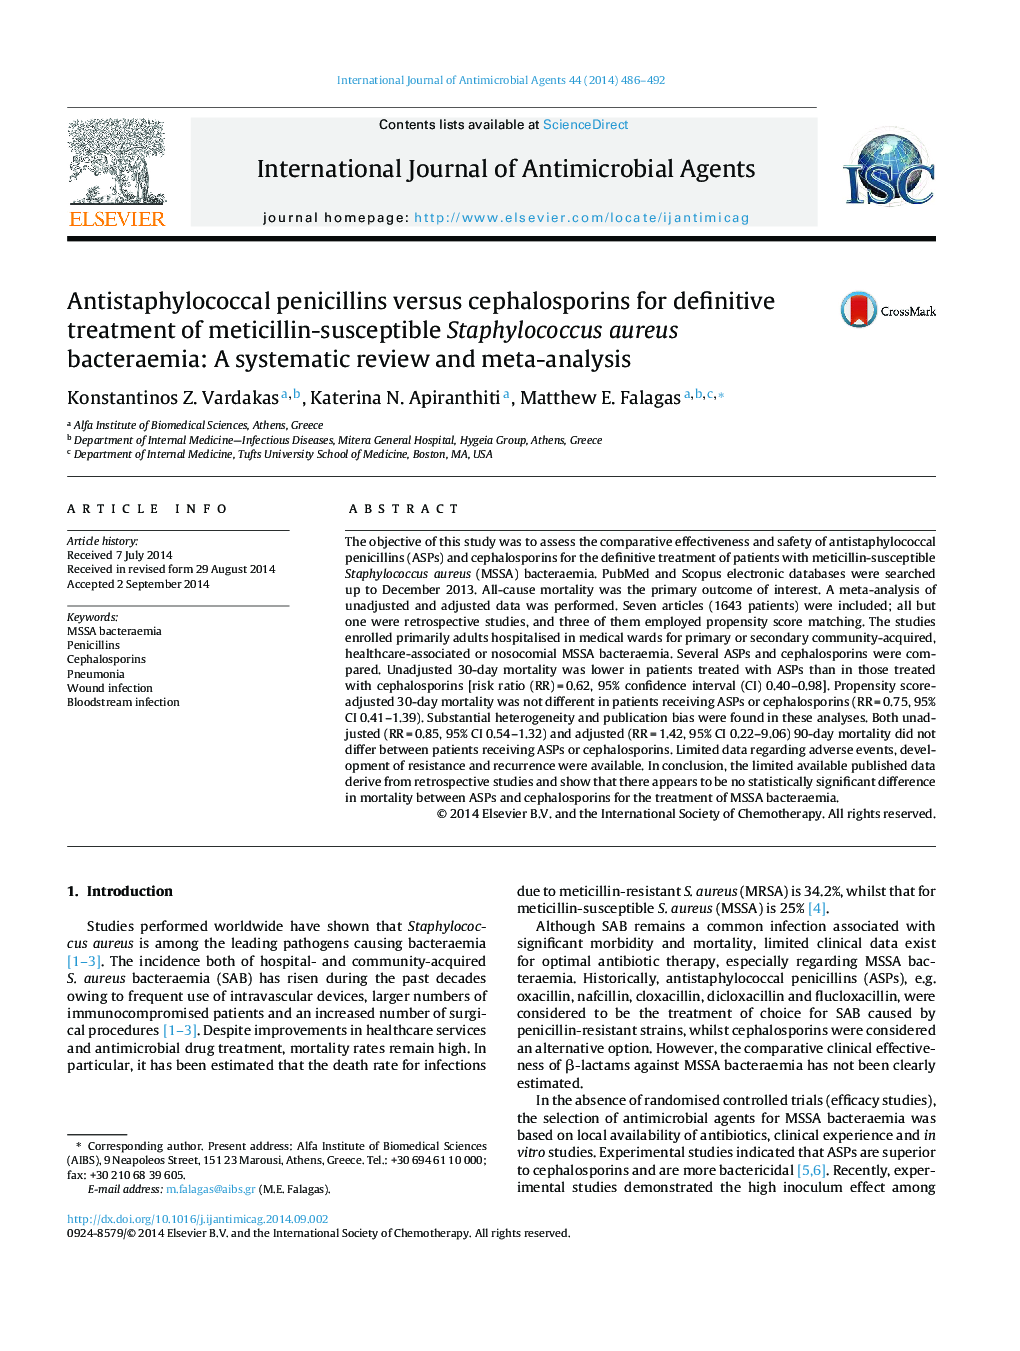 پنی سیلین های آنتی استافیلوکوک در مقایسه با سفالوسپورین ها برای درمان قطعی استافیلوکوک اورئوس باکتریمای حساس به متیسیلین: یک بررسی سیستماتیک و متاآنالیز 